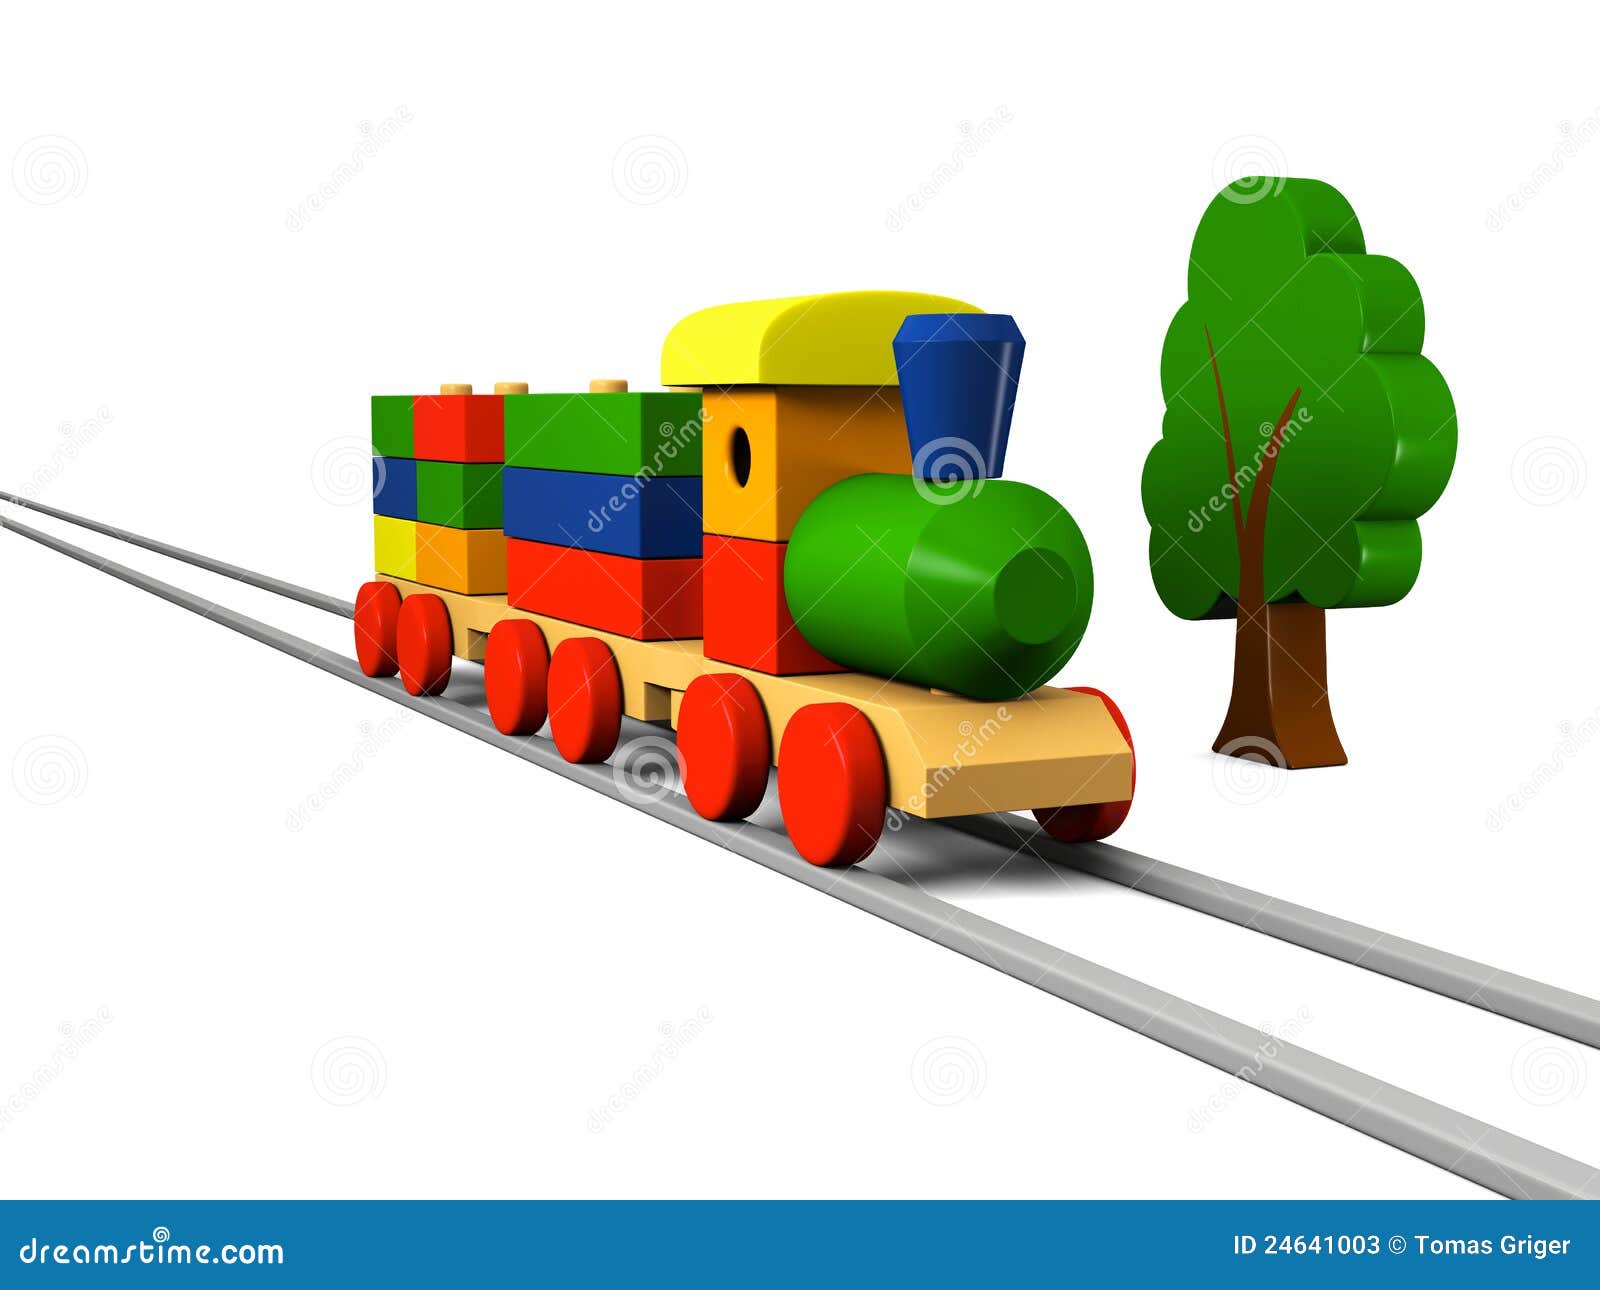 Trem de brinquedo com trilhos